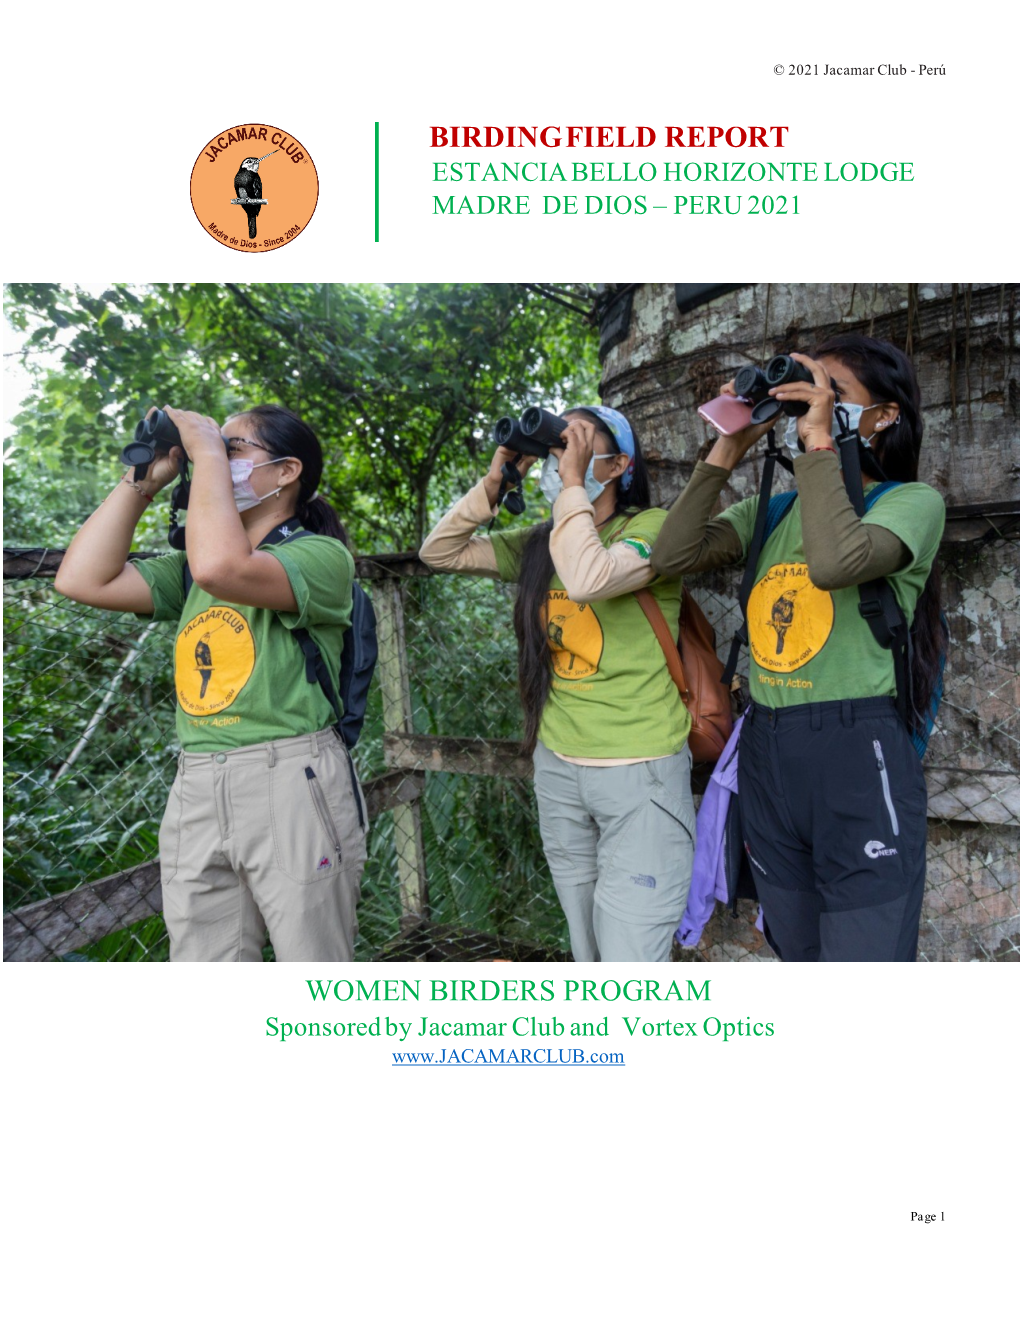 Birdingfield Report Women Birders Program